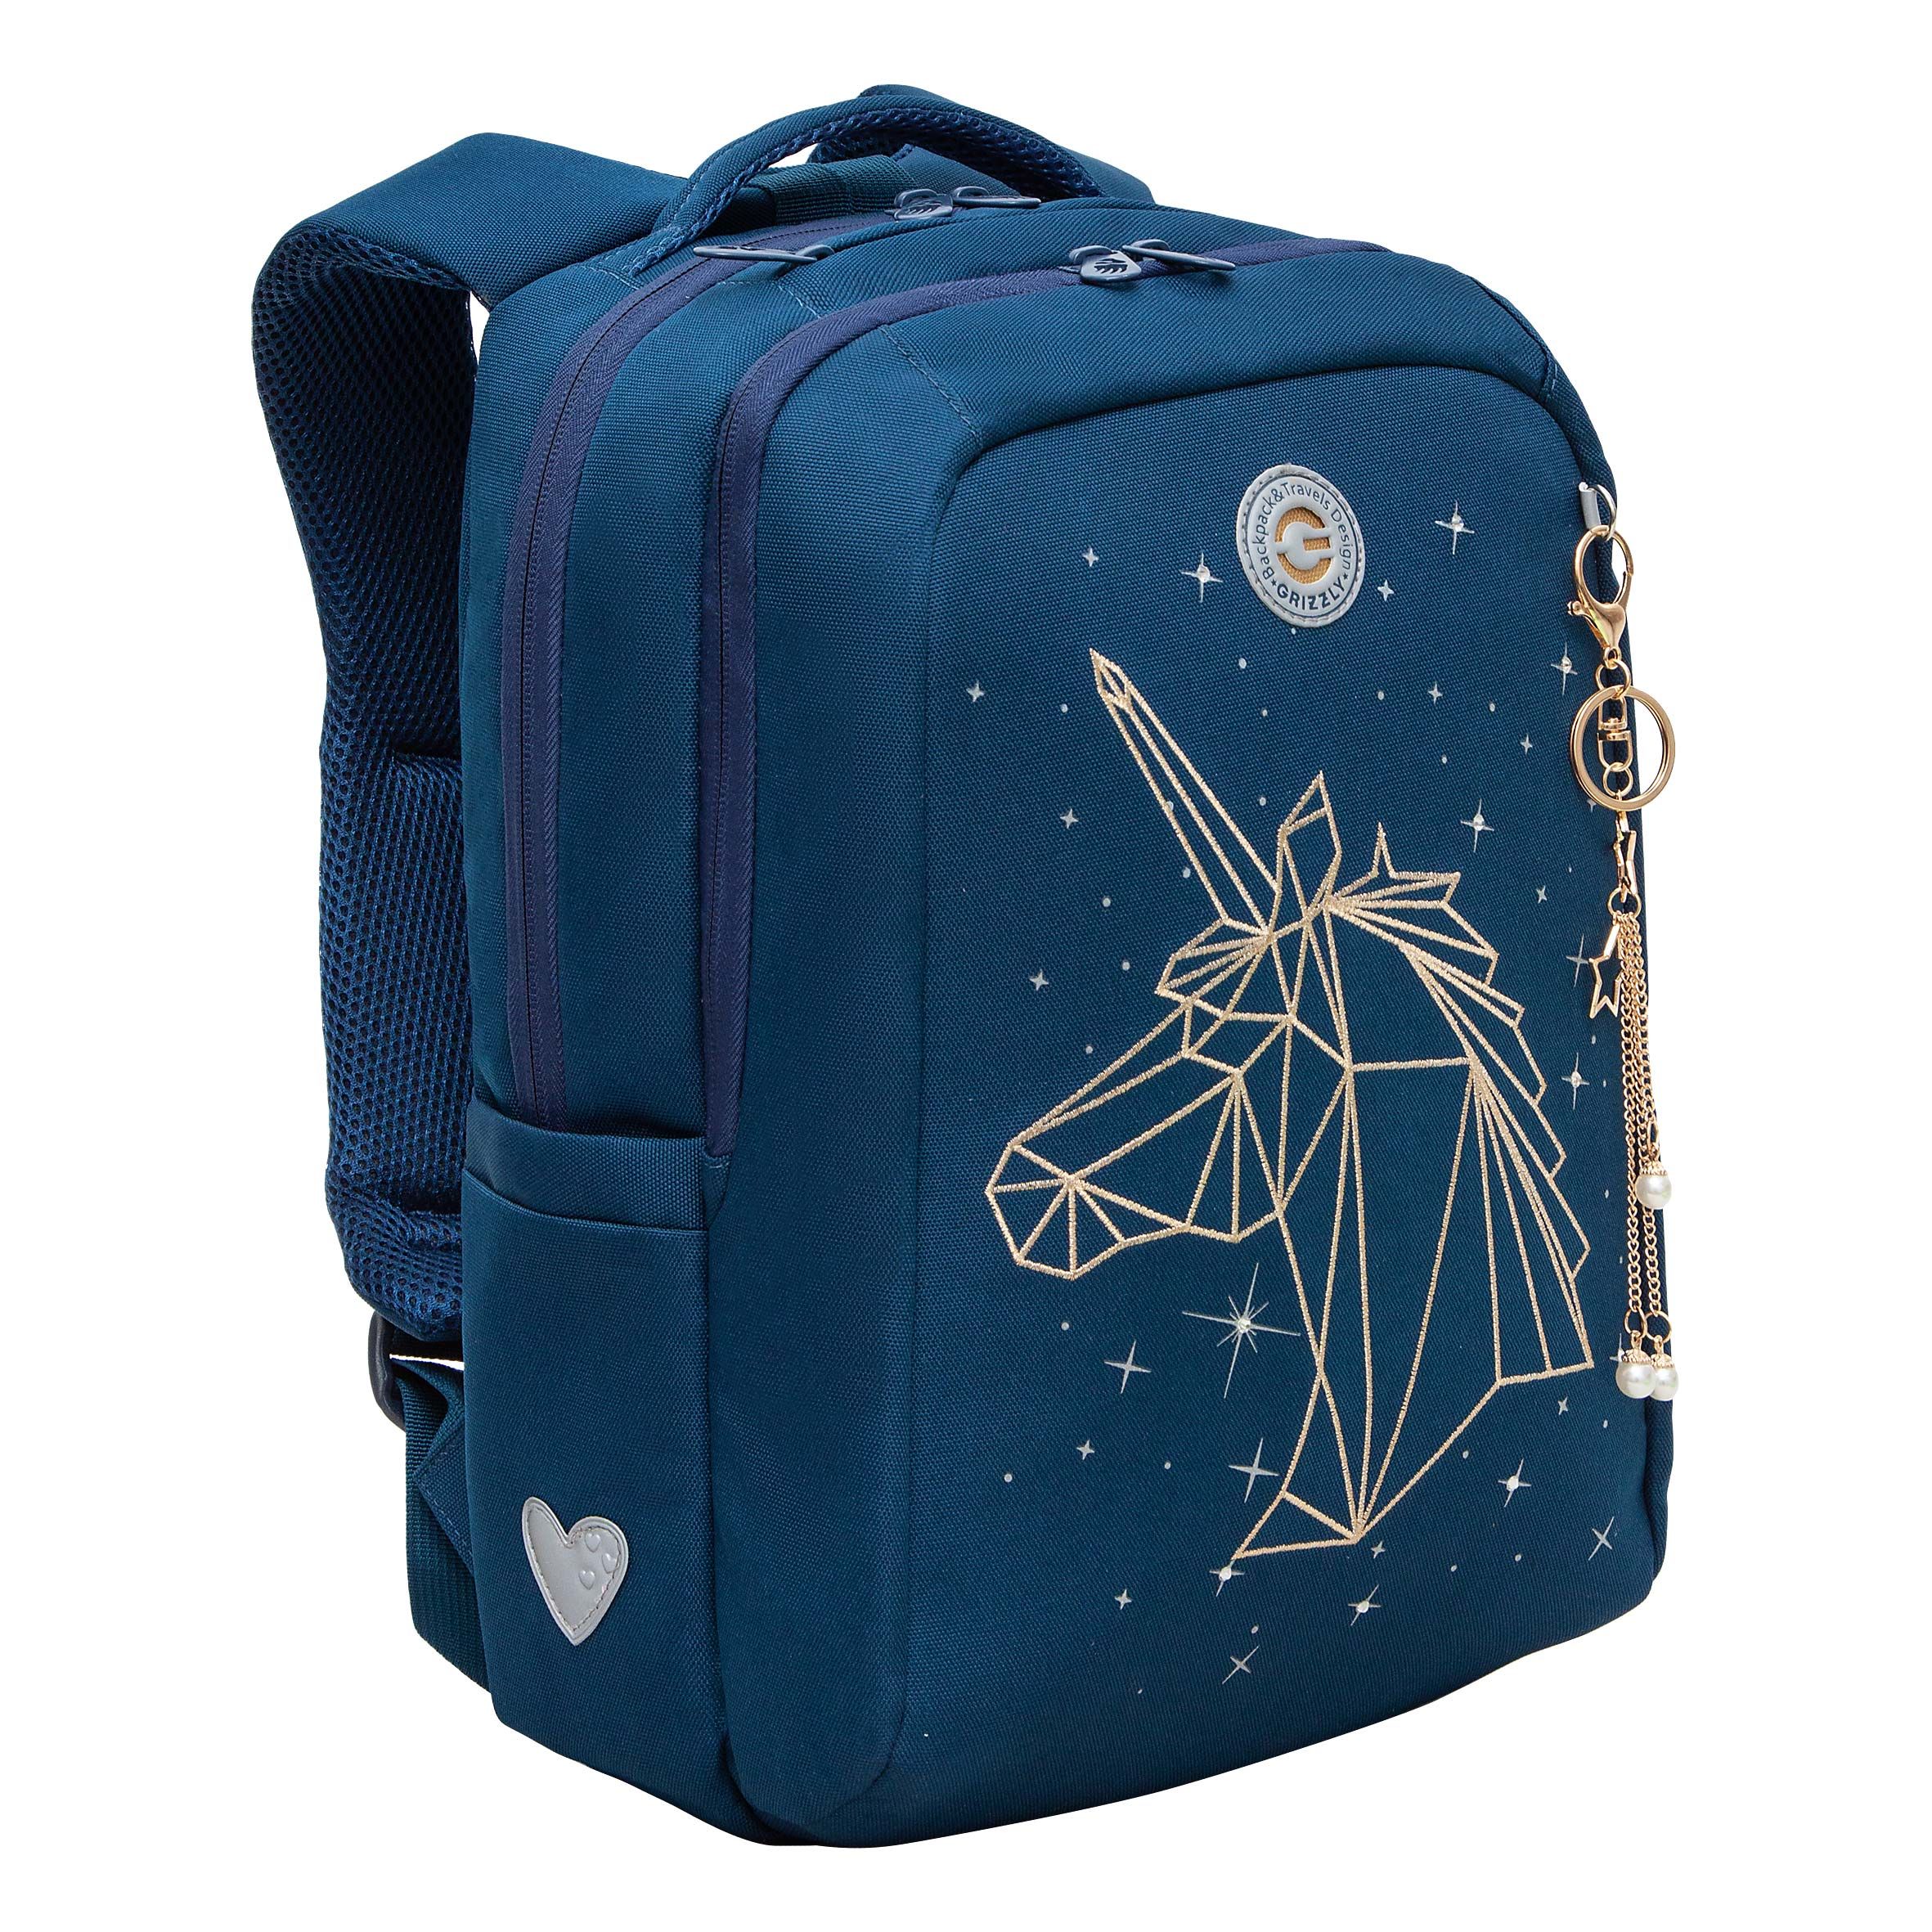 Рюкзак школьный GRIZZLY RG-466-1 с карманом для ноутбука 13 двумя отделениями синий